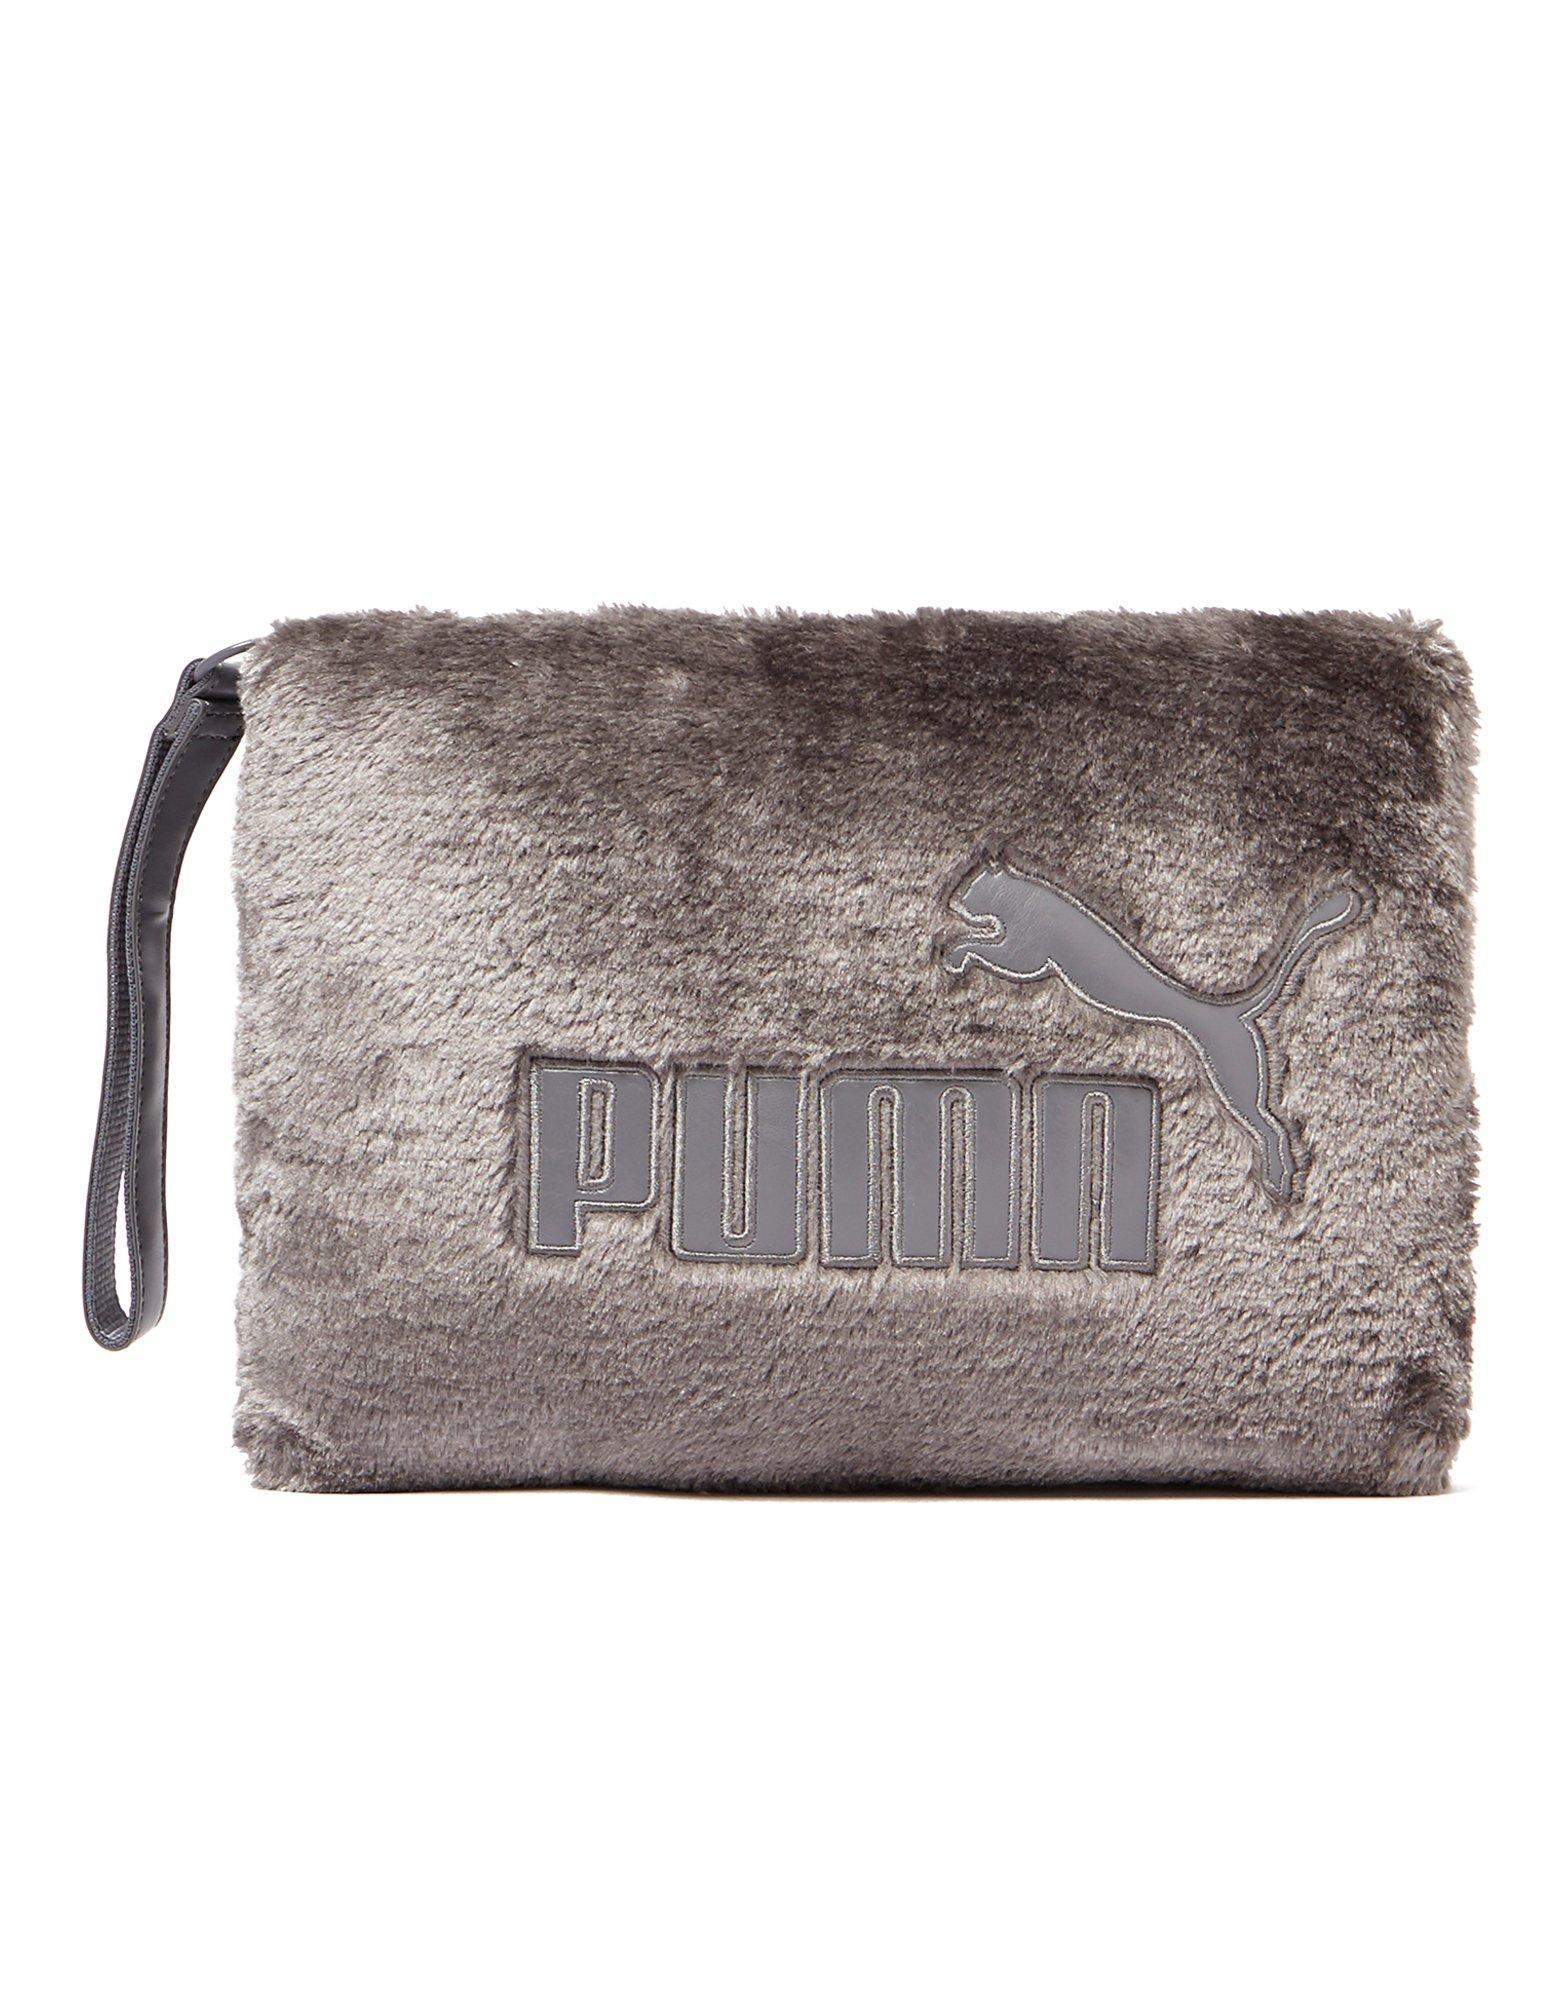 PUMA Fur Clutch Bag in Purple - Lyst